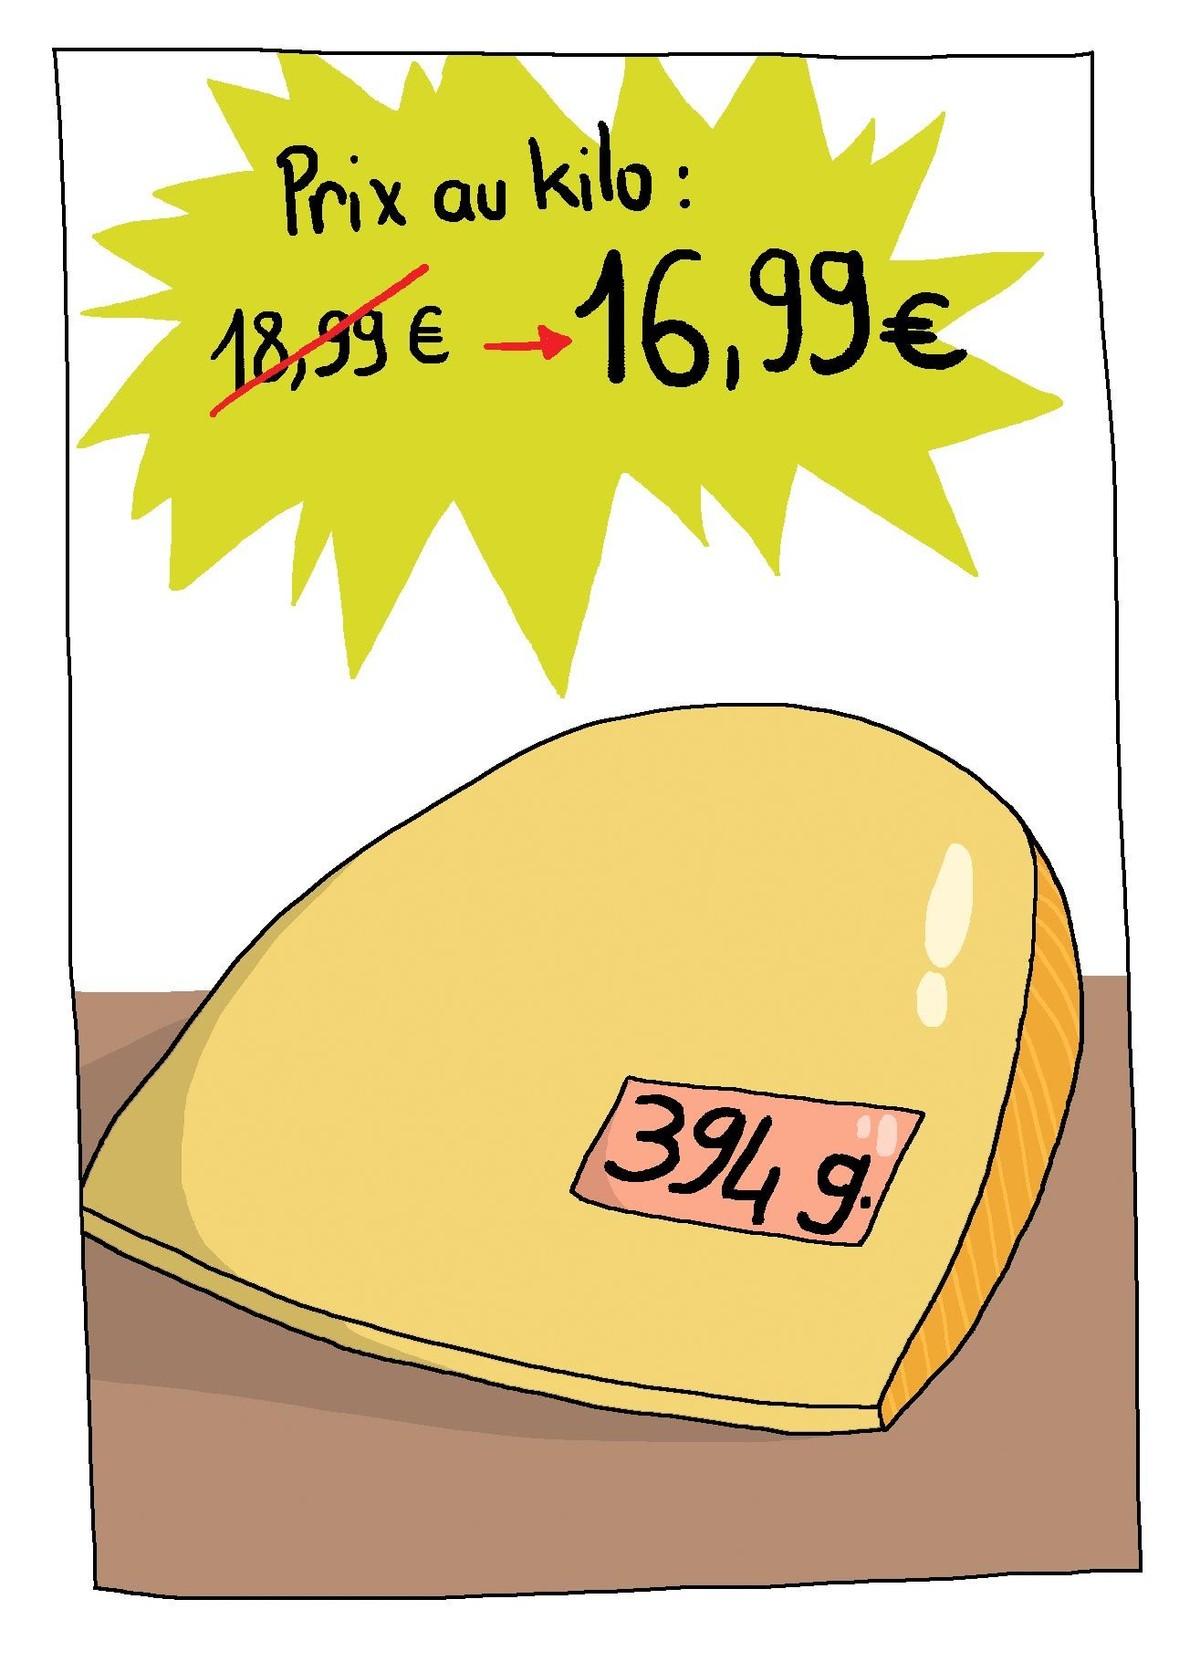 Affiche représentant un fromage de 394g dont le prix au kilo est de 16,99 euros au lieu de 18,99 euros. 